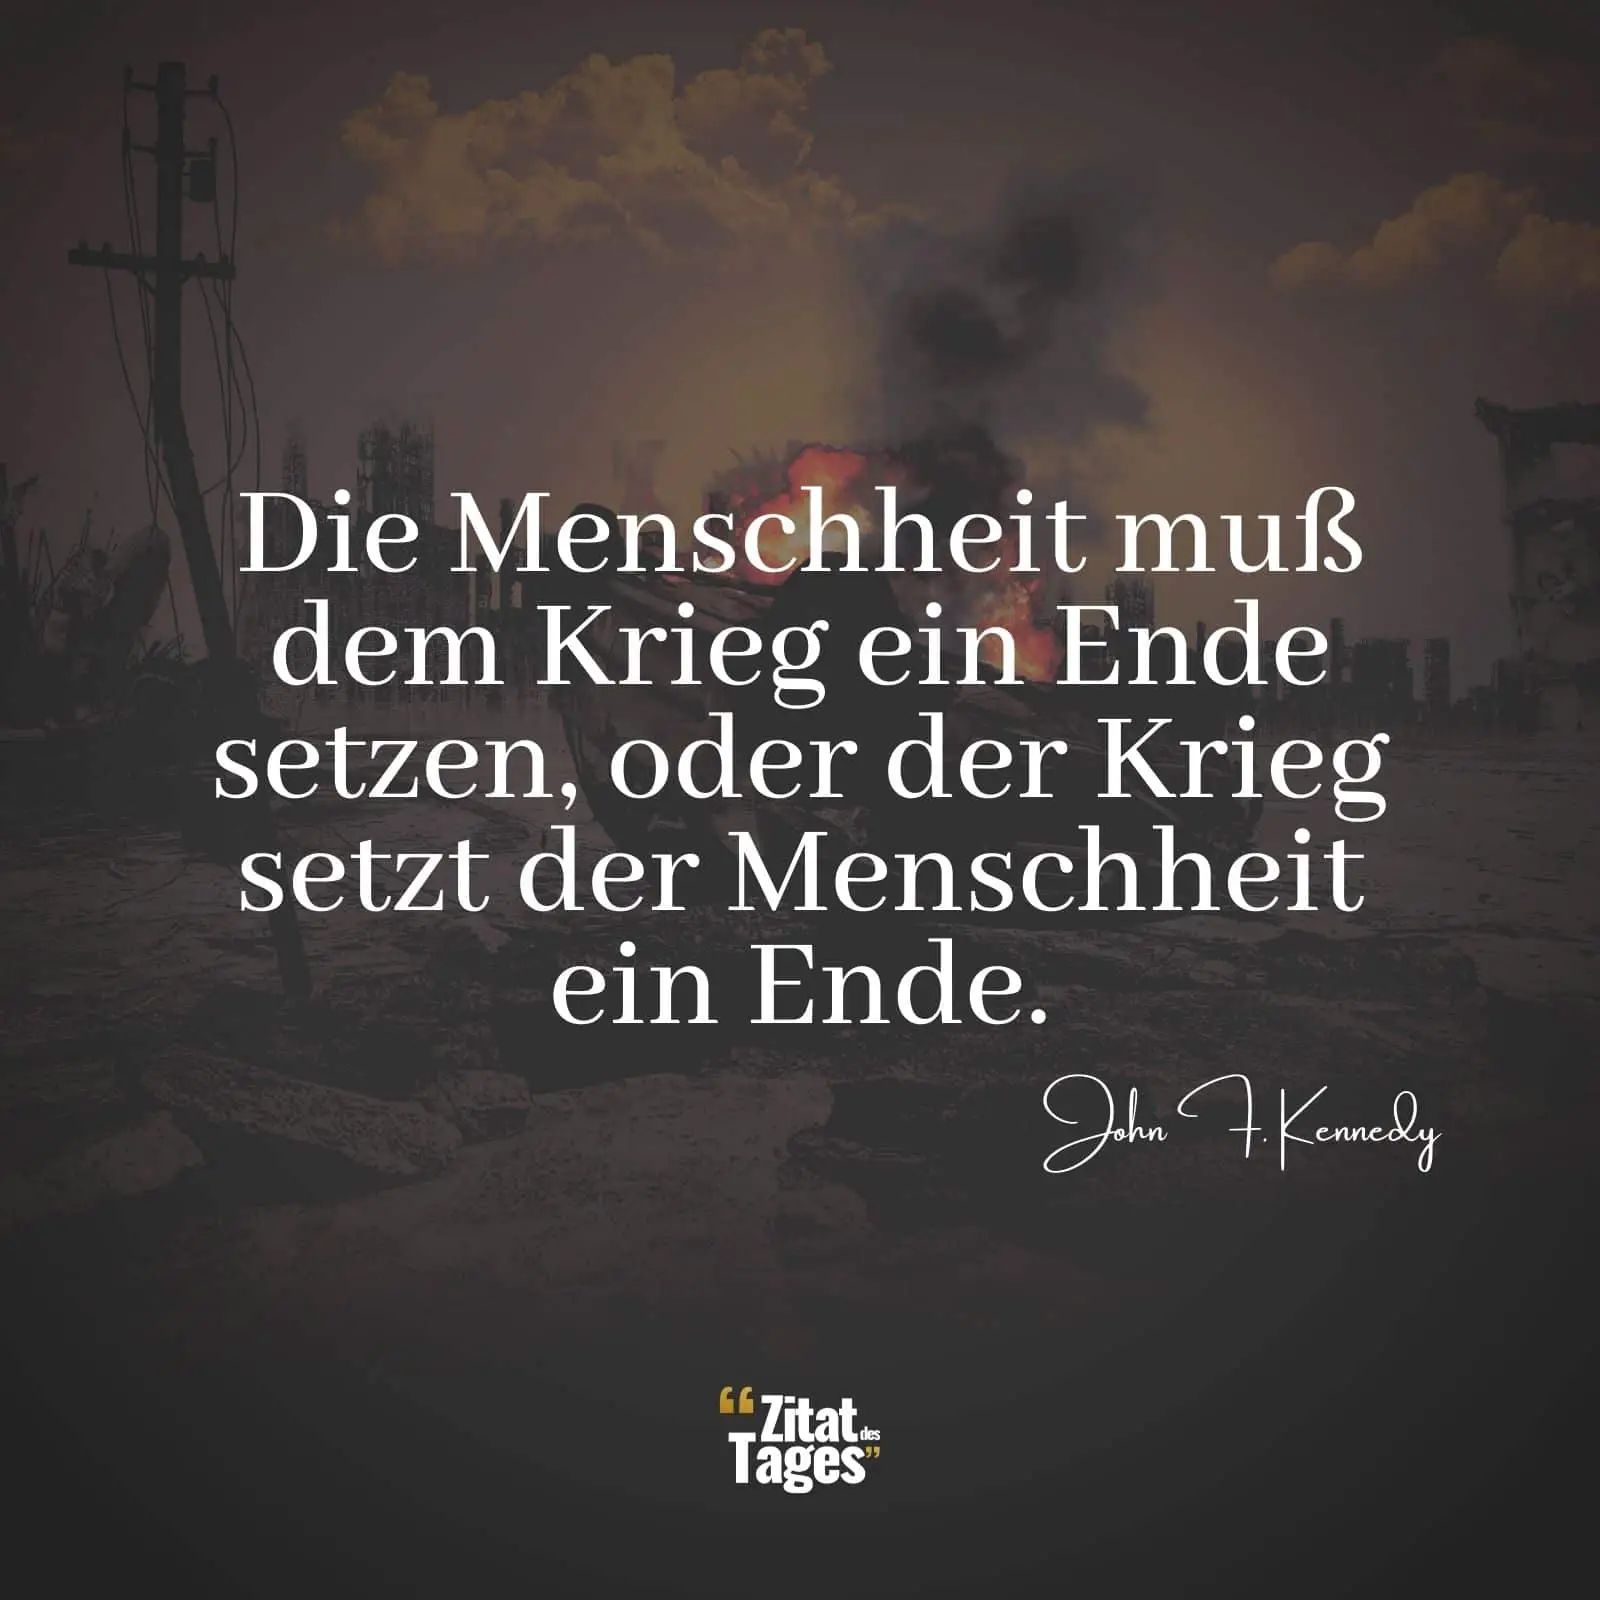 Die Menschheit muß dem Krieg ein Ende setzen, oder der Krieg setzt der Menschheit ein Ende. - John F. Kennedy